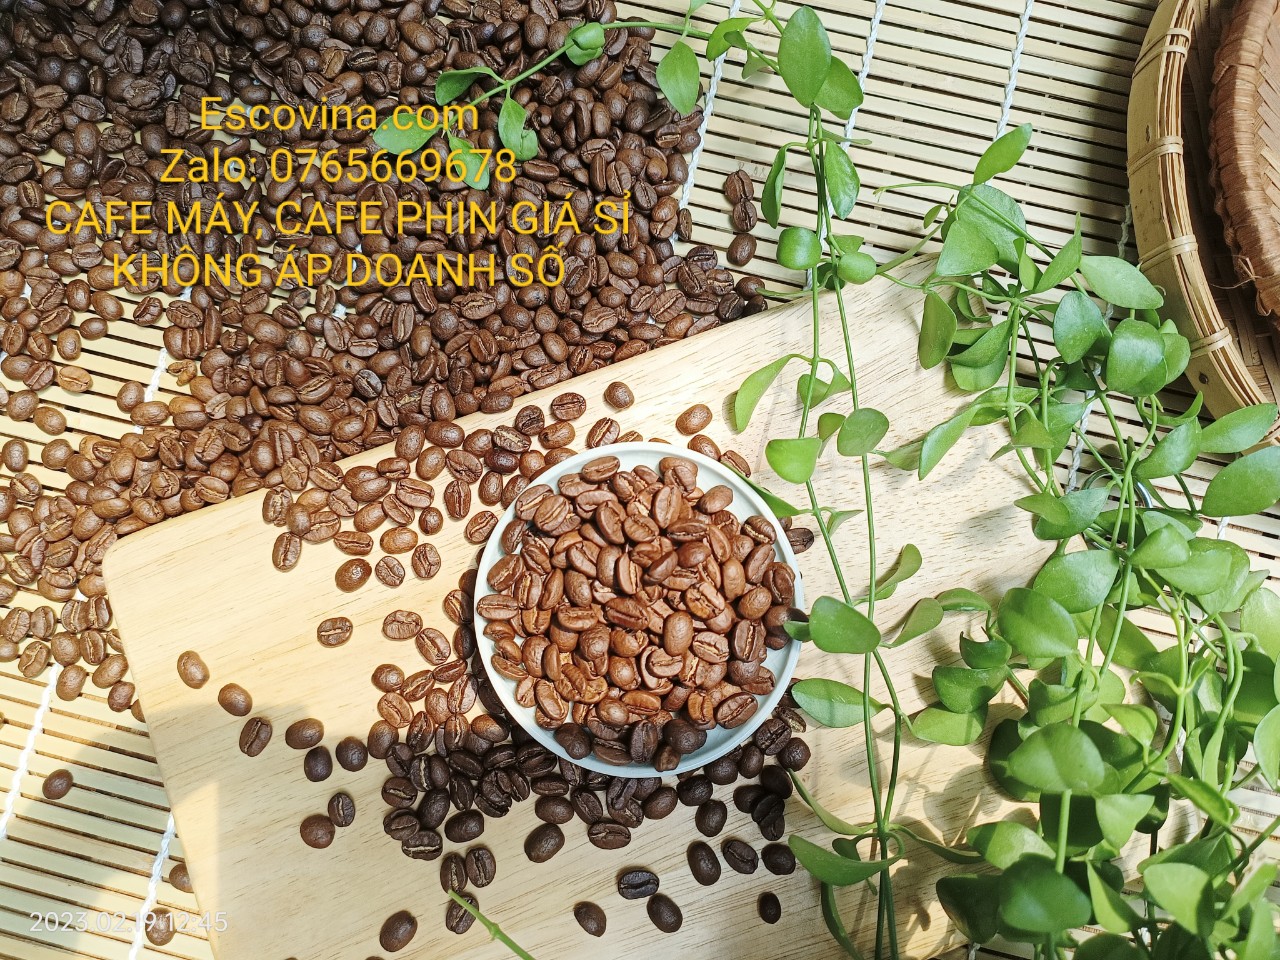 Cà phê pha máy Biên Hòa Đồng Nai, Sản phẩm loại 1 của Escovina Coffee chỉ với giá sỉ từ xưởng